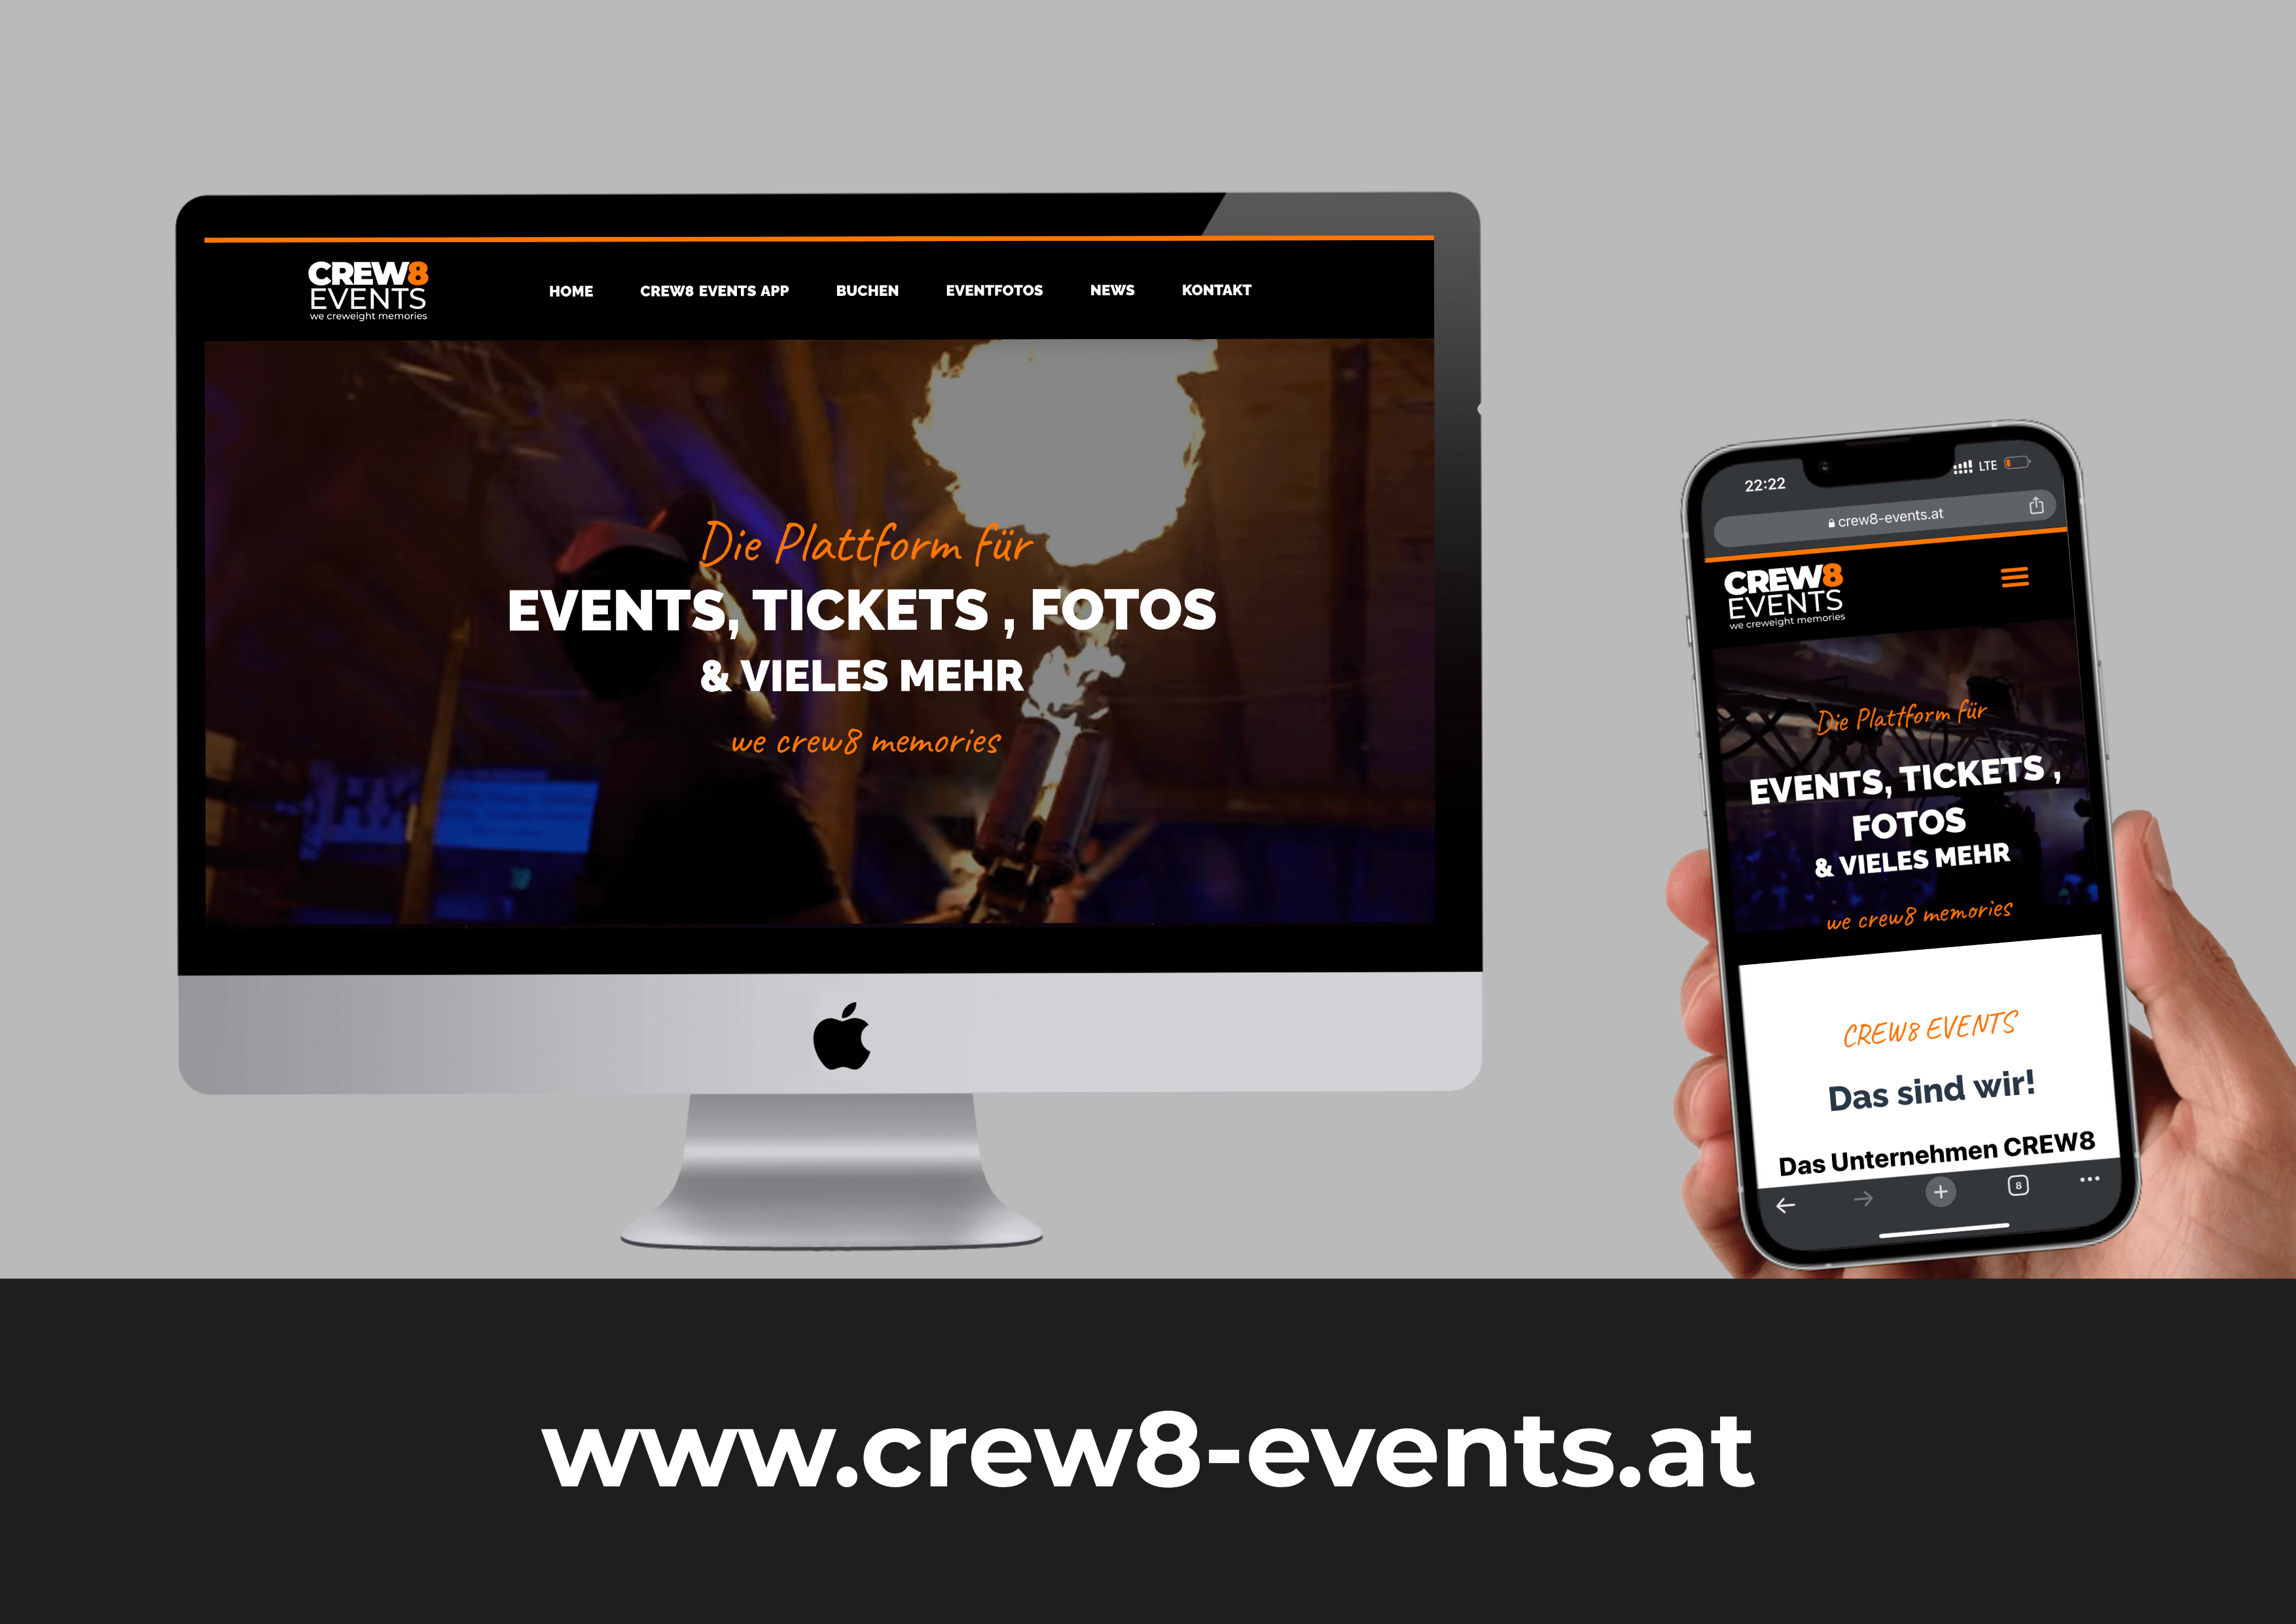 CREW8_Events